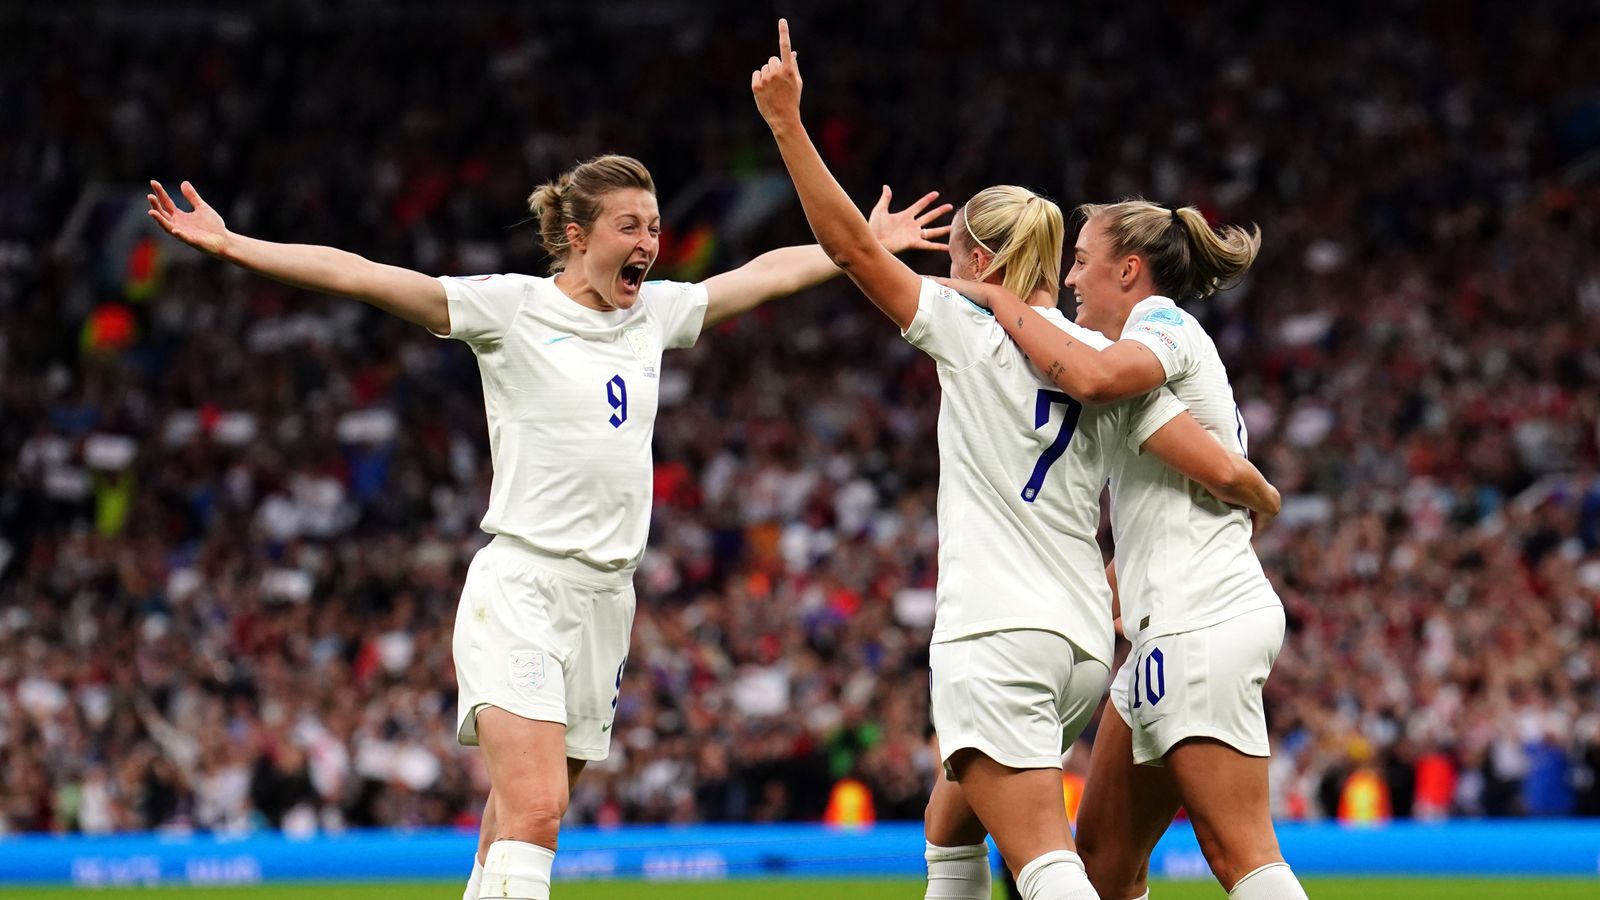 Inglaterra Feminina: Sarina Wiegman elogia a atmosfera ‘incrível’ de Old Trafford, mas diz que o time marcou mais gols |  notícias de futebol